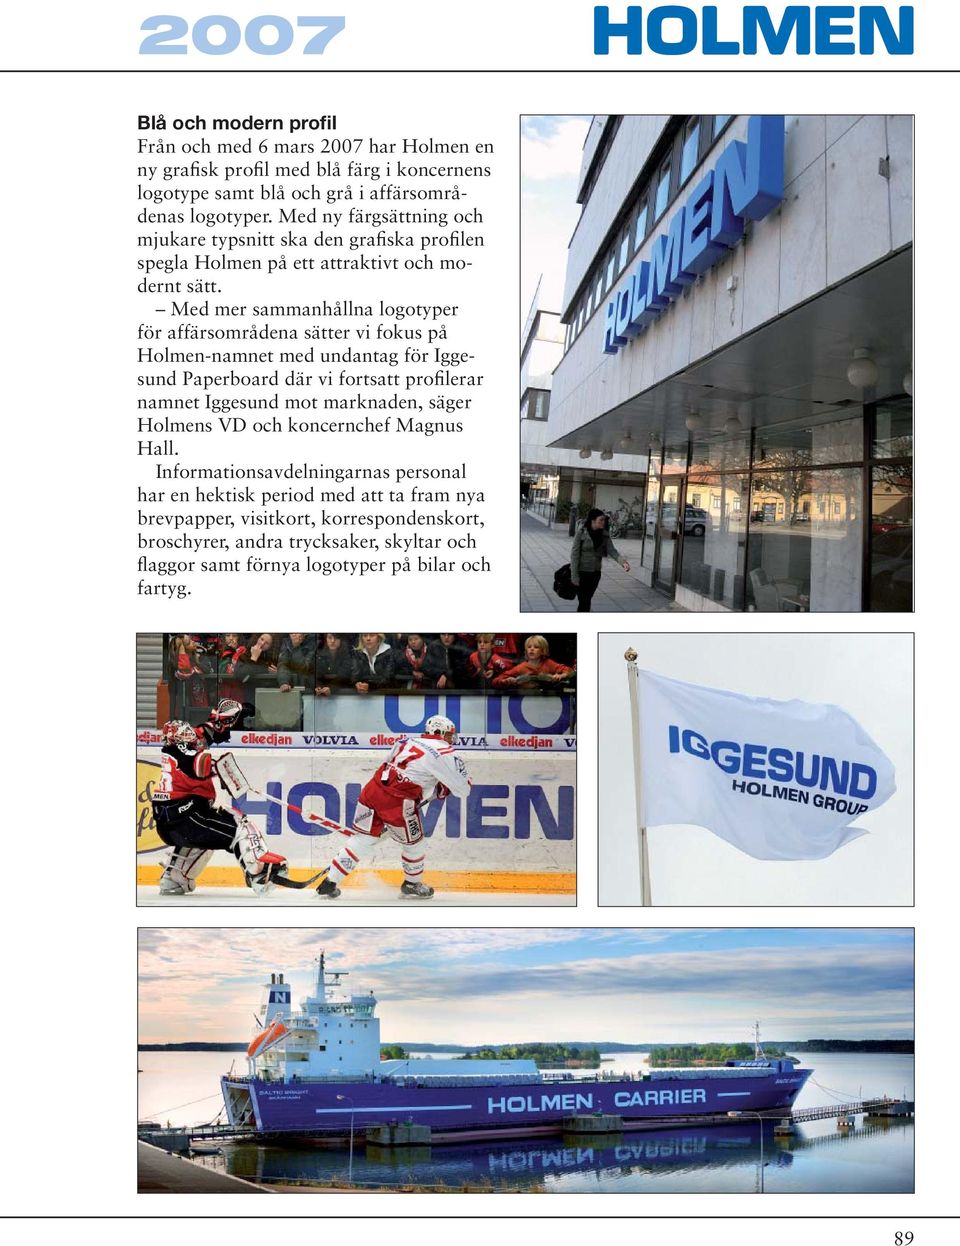 Med mer sammanhållna logotyper för affärsområdena sätter vi fokus på Holmen-namnet med undantag för Iggesund Paperboard där vi fortsatt profilerar namnet Iggesund mot marknaden,